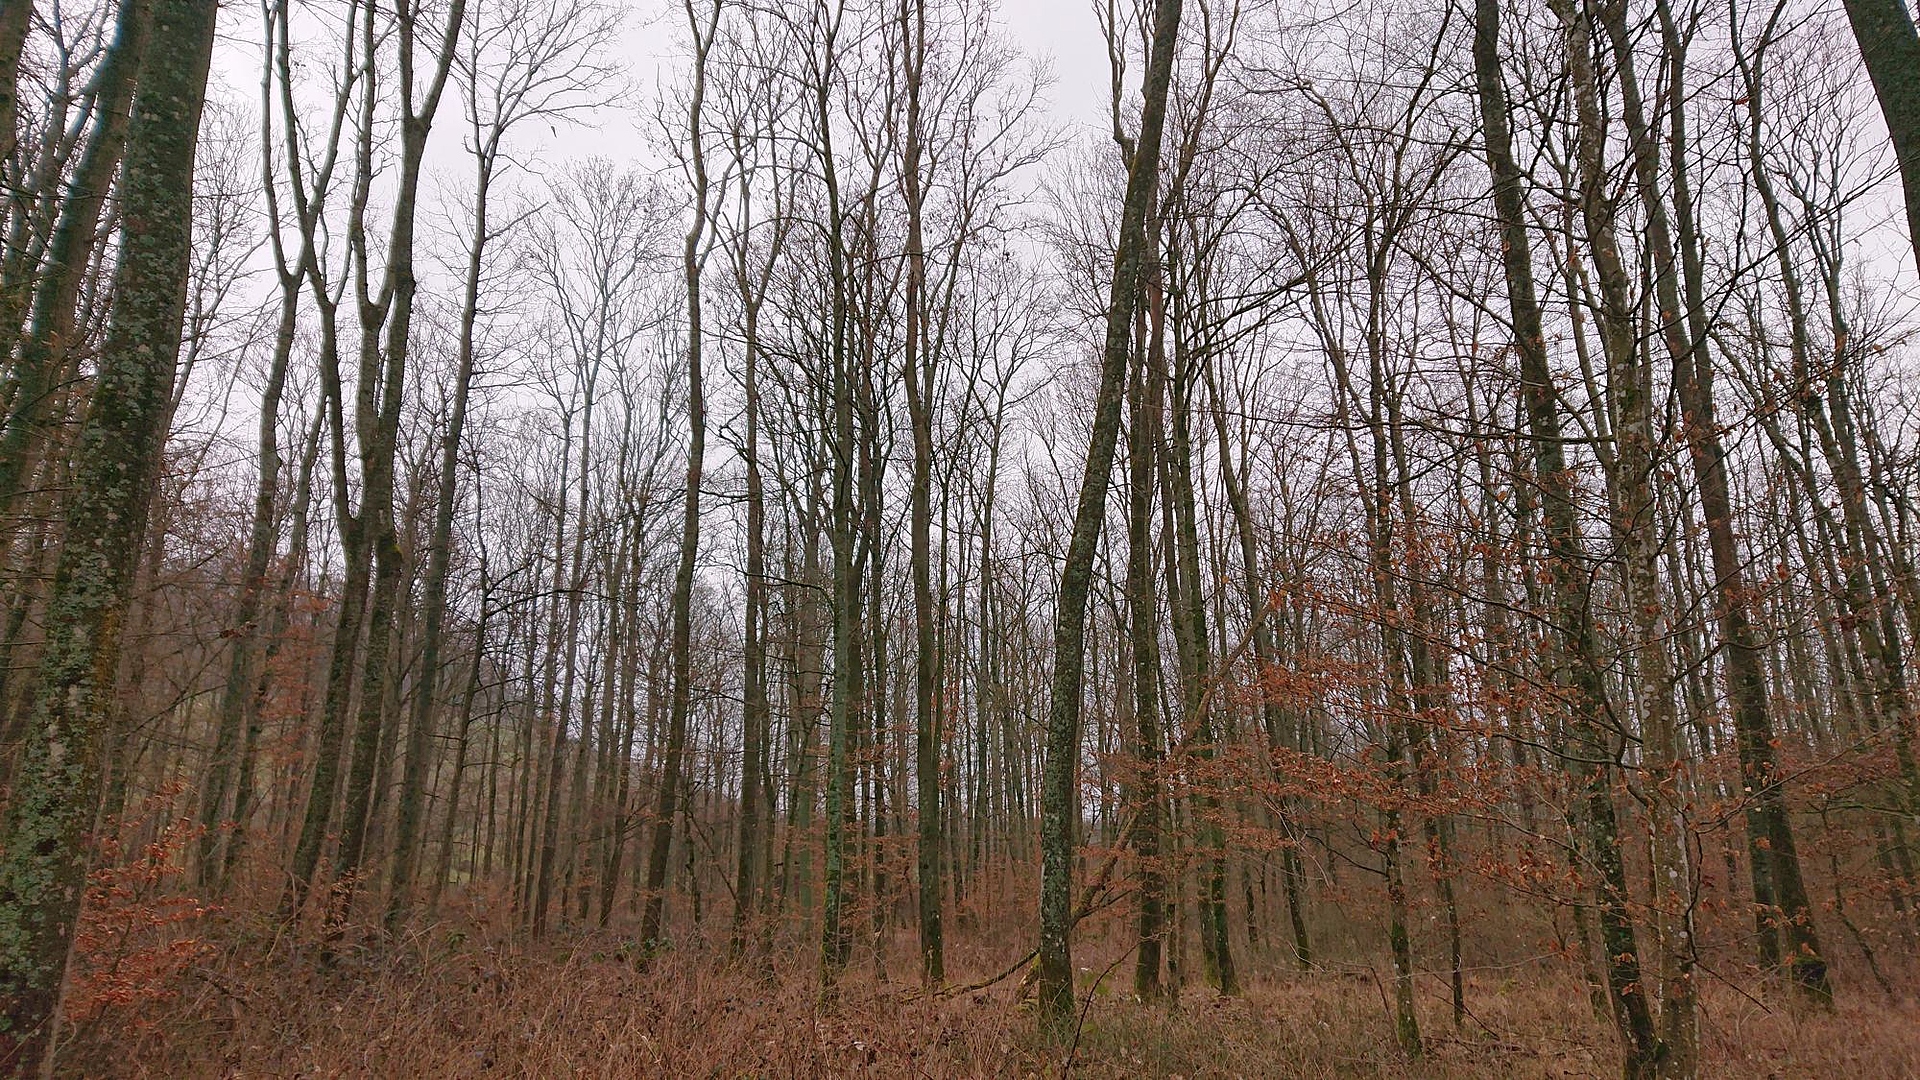 Das Foto zeigt den Blick auf die Untersuchungsfläche Plattenwald in Baden-Württemberg aufgenommen im Frühjahr. Der stammzahlreiche Bestand in ebener Lage zeichnet sich durch viele Eschen und Mischbaumarten aus.Es gibt einen sehr dichten Zwischenstand und stellenweise dichte Verjüngung. Die Bodenvegetation aus Gräsern und Brombeeren ist dicht.